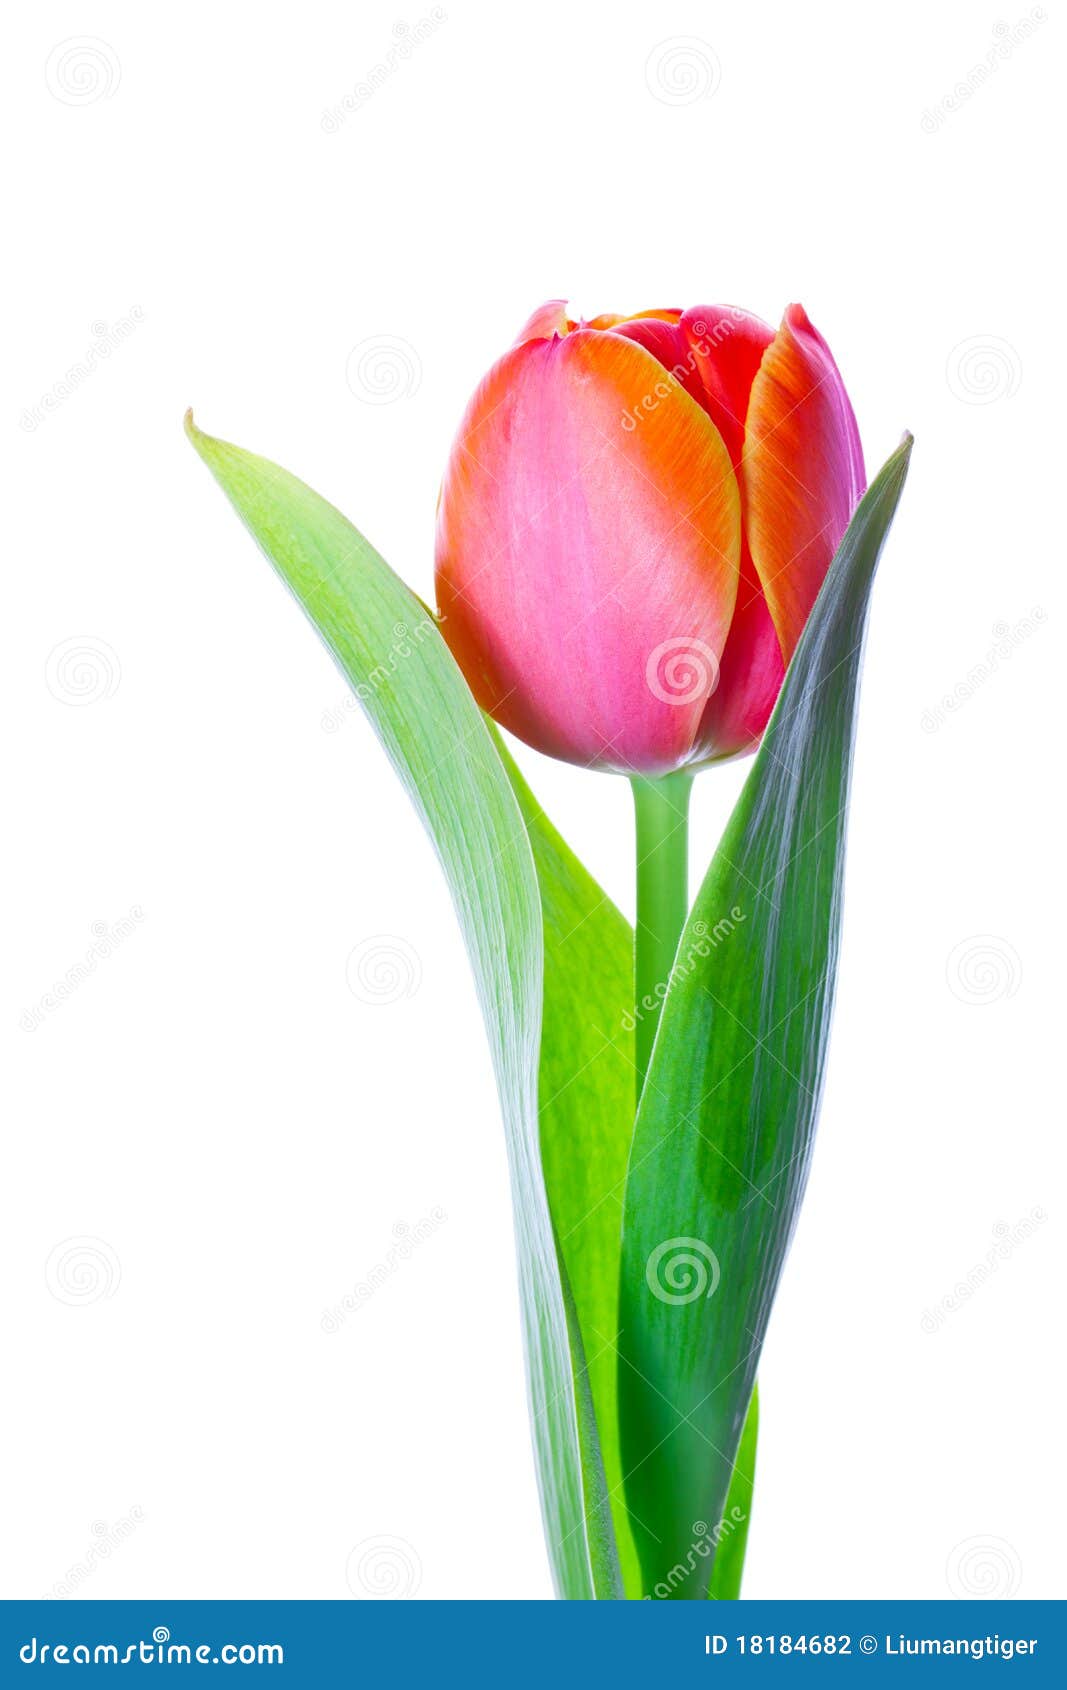  tulip flower